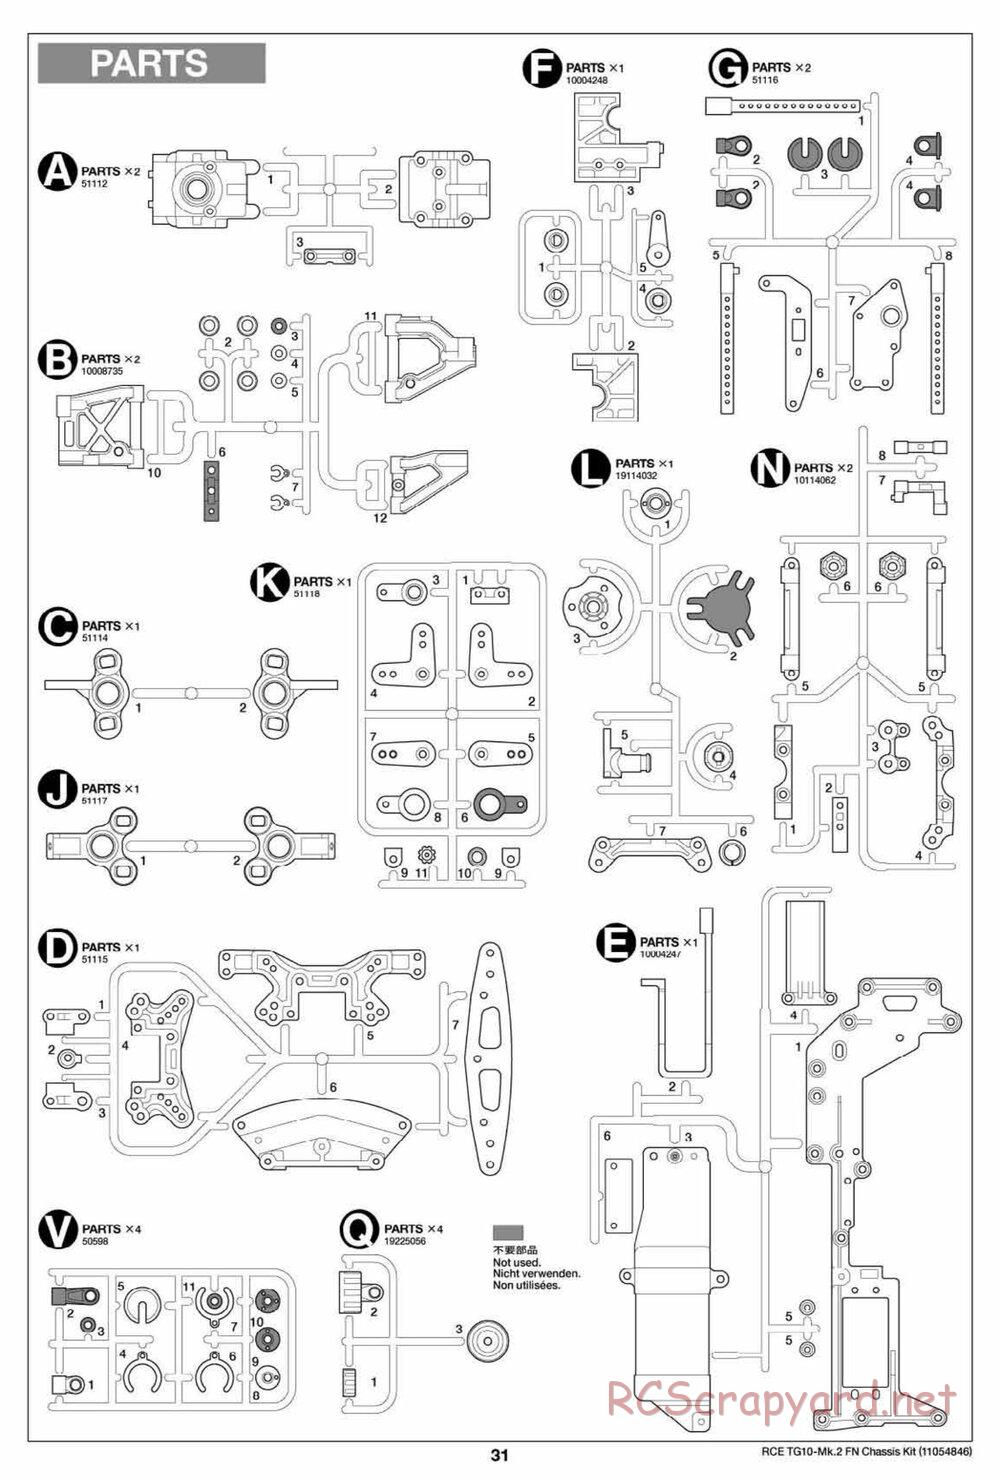 Tamiya - TG10 Mk.2 FN Chassis - Manual - Page 31